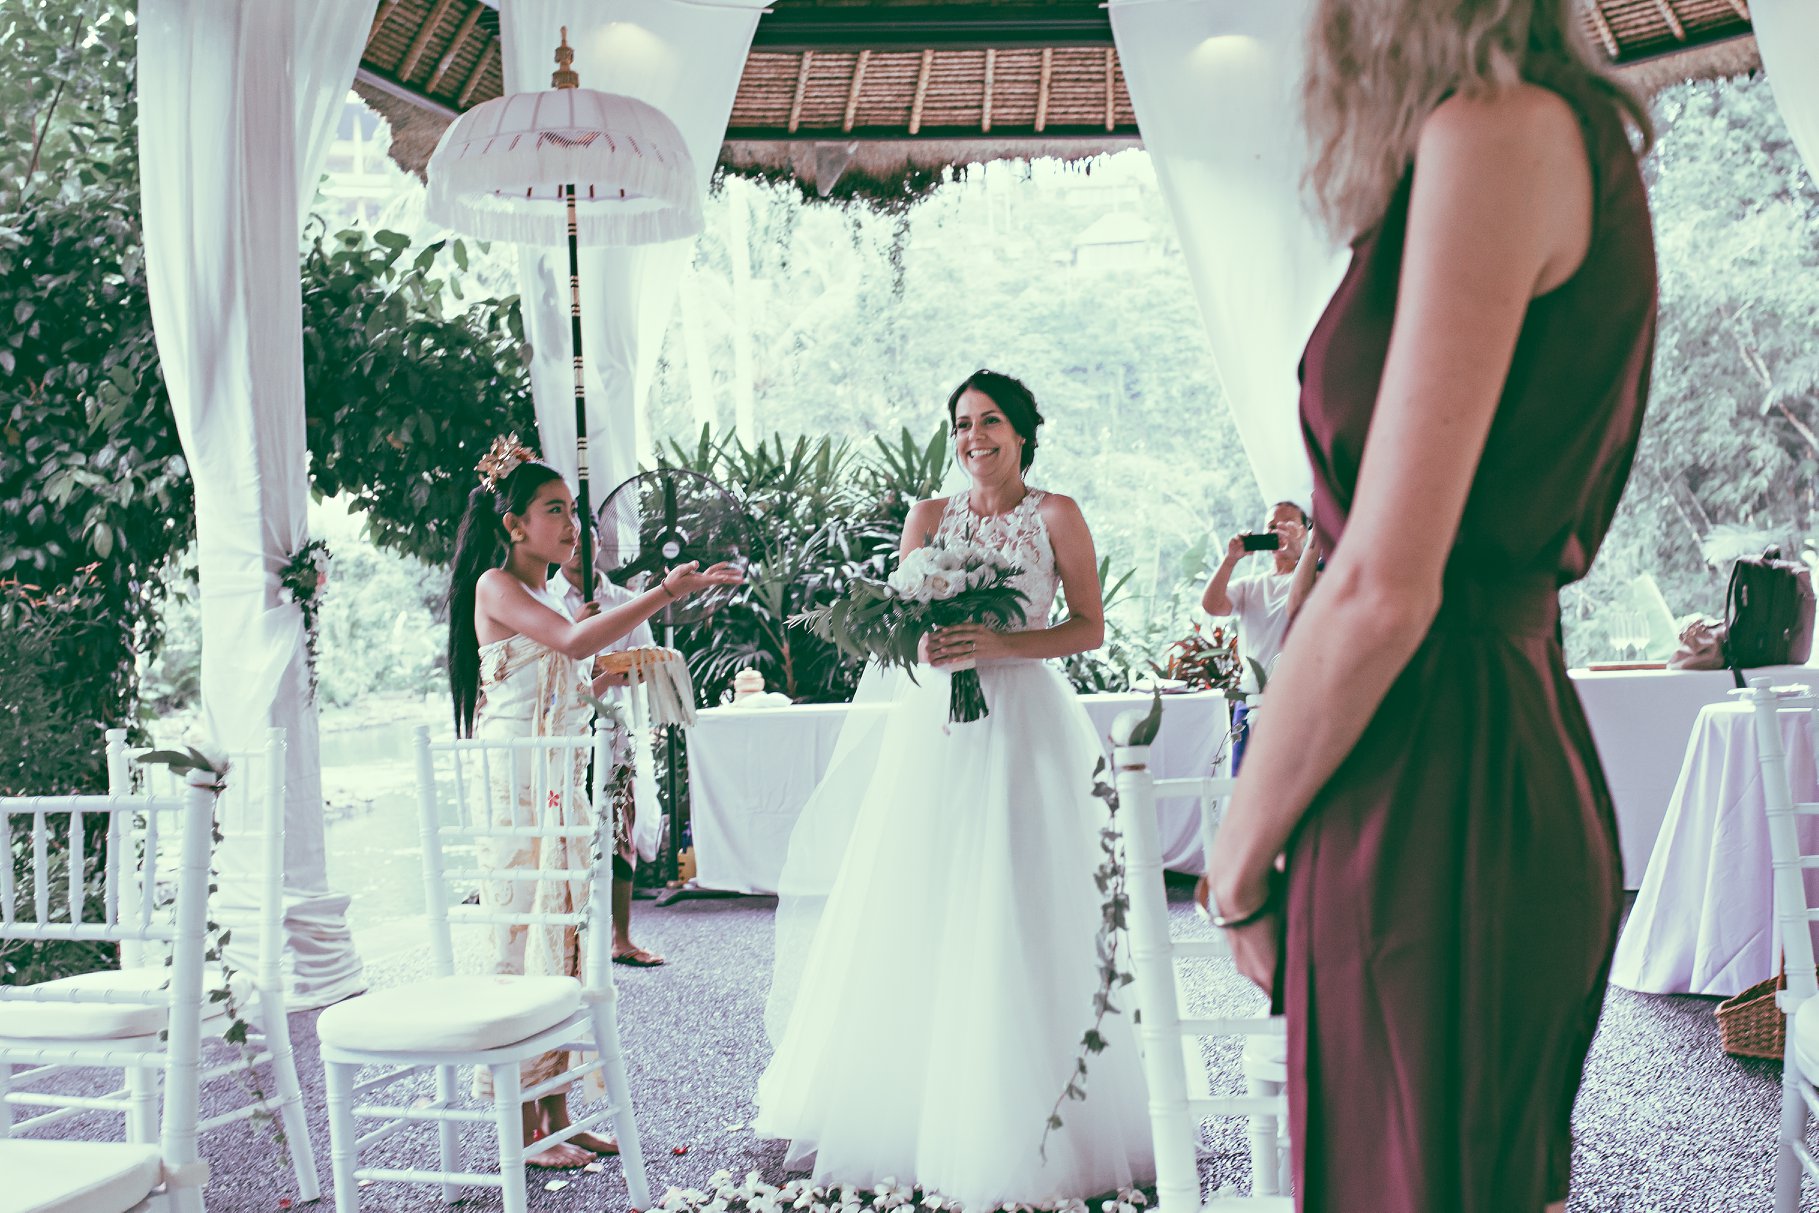 Ubud female wedding photographer